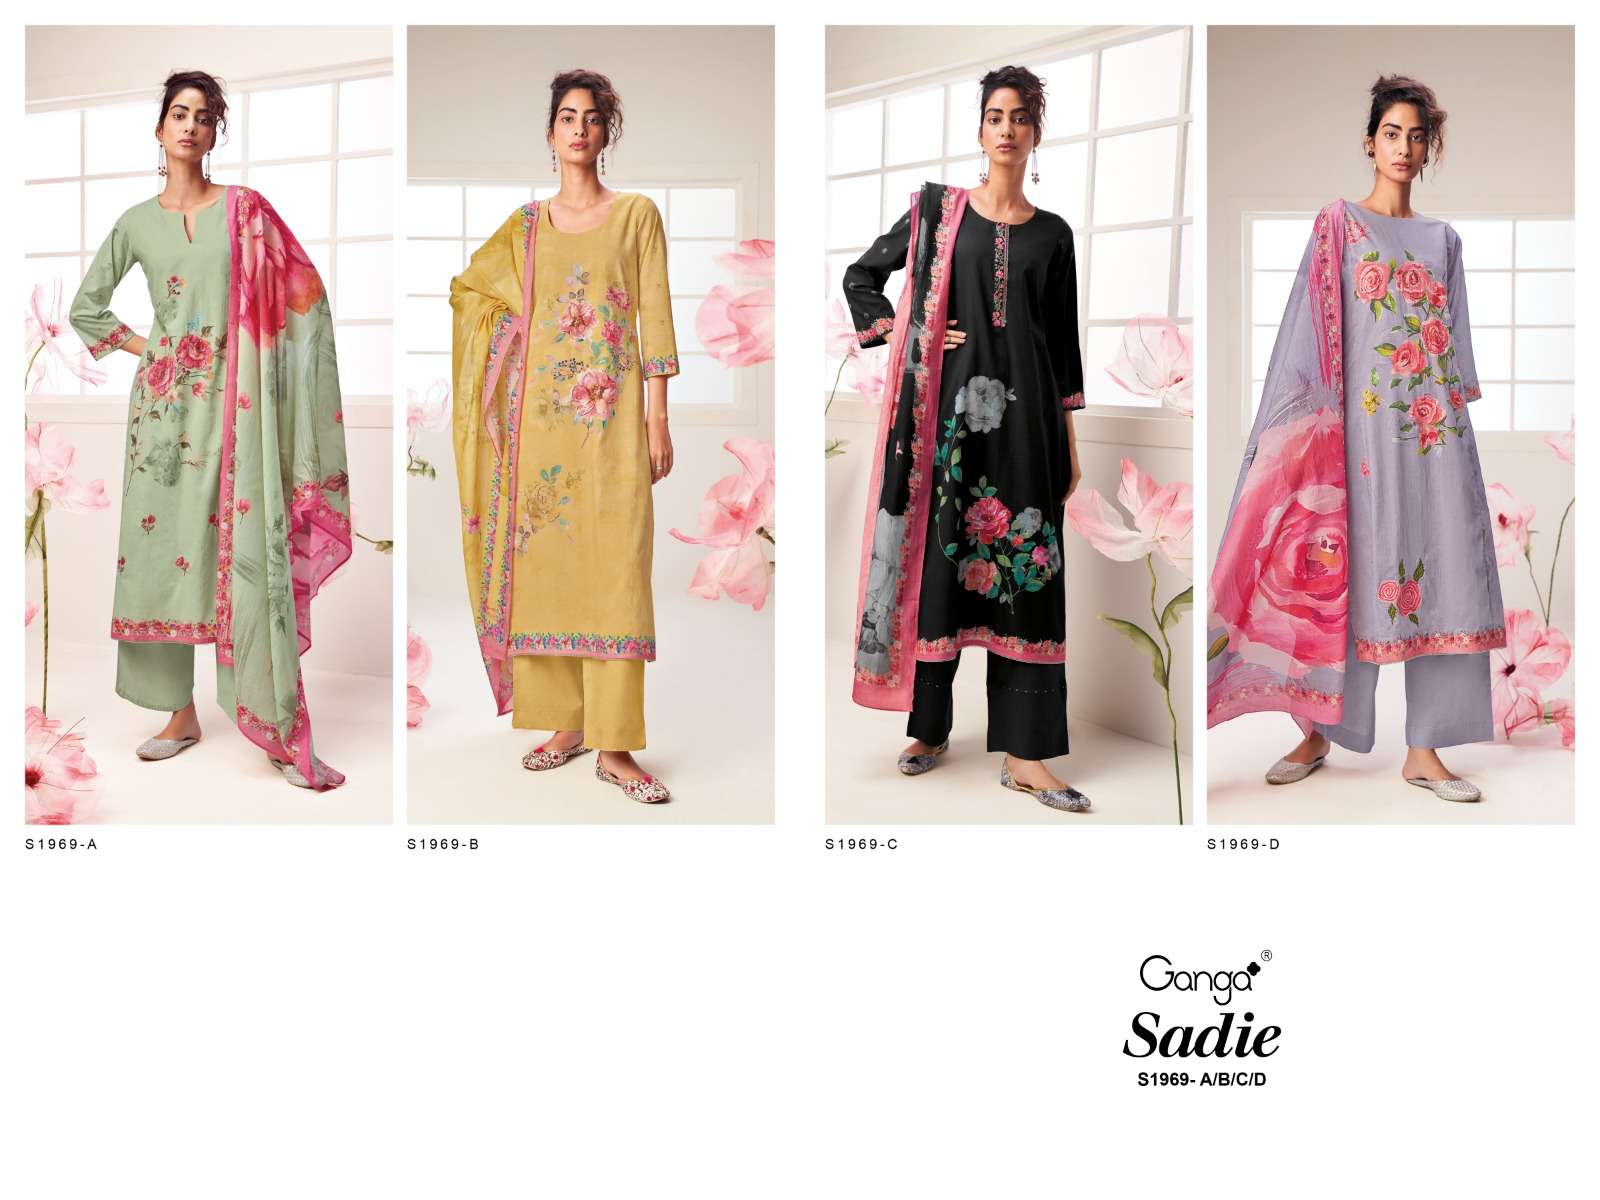 ganga sadie 1969 colour series designer wedding salwar kameez wholesaler surat gujarat